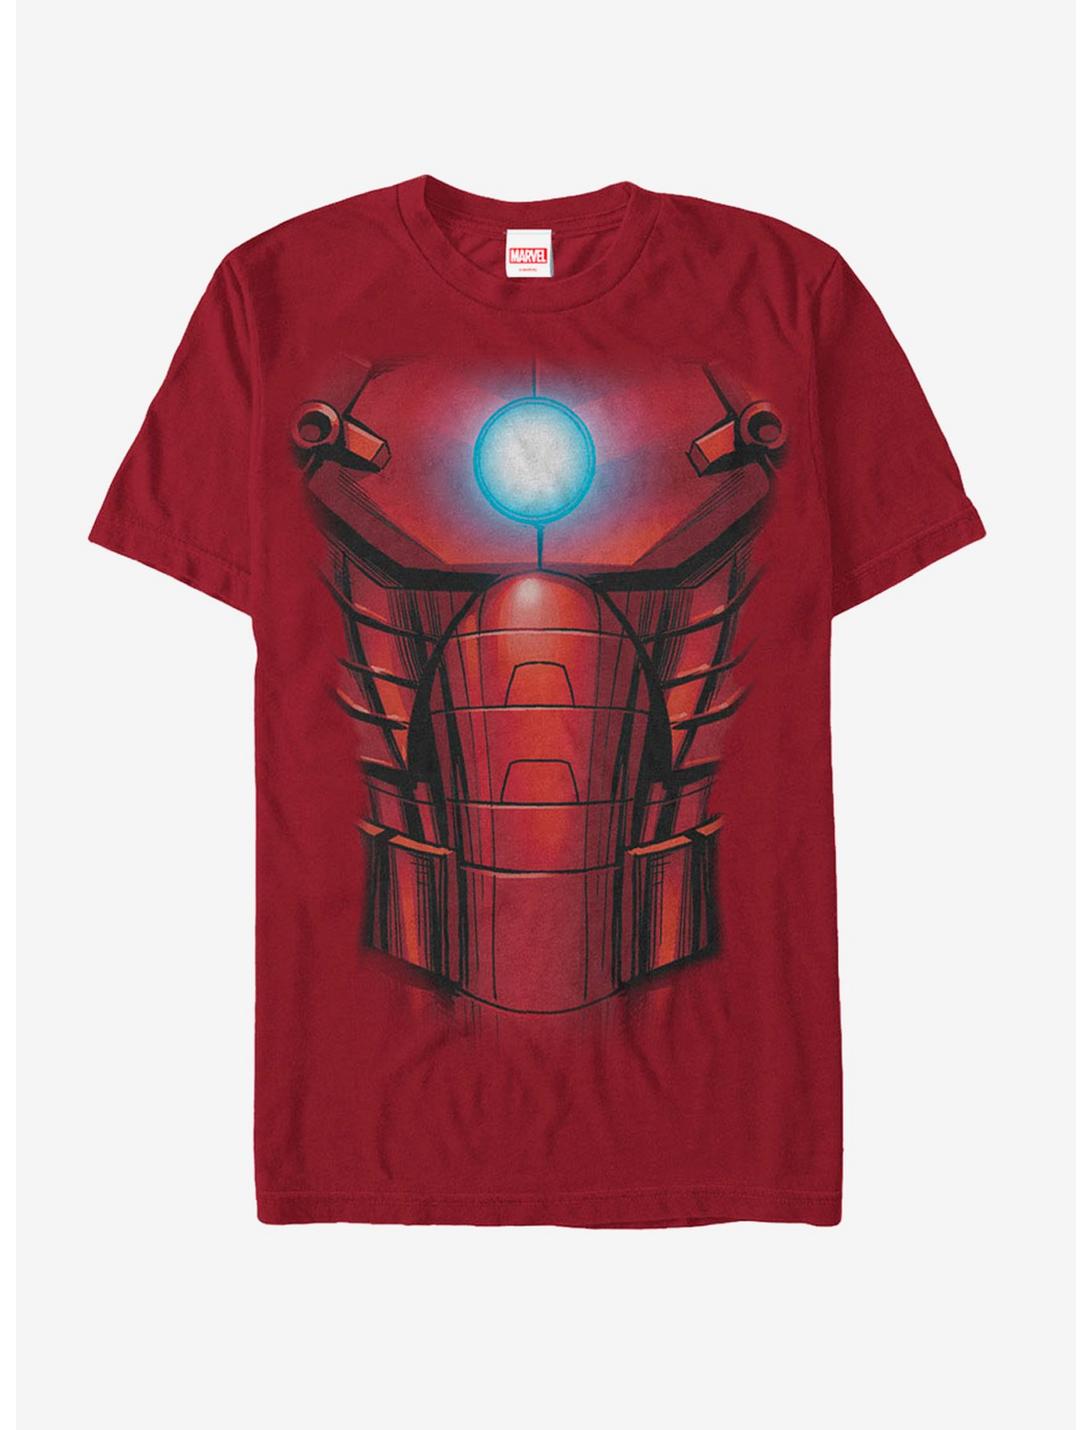 Marvel Halloween Iron Man Arc Reactor Costume T-Shirt, CARDINAL, hi-res